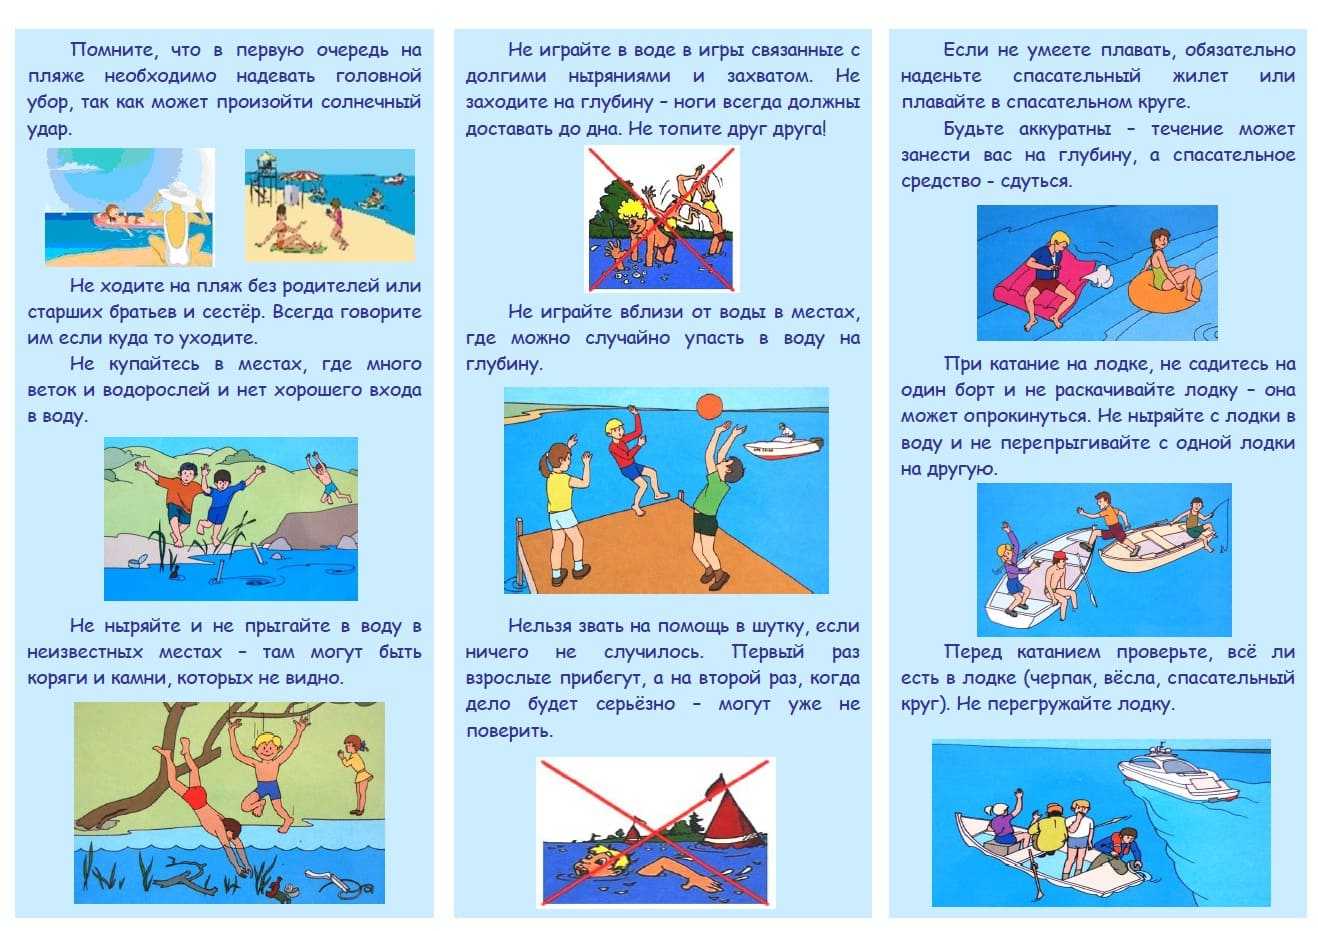 Правила поведения в бассейне и правила посещения бассейна